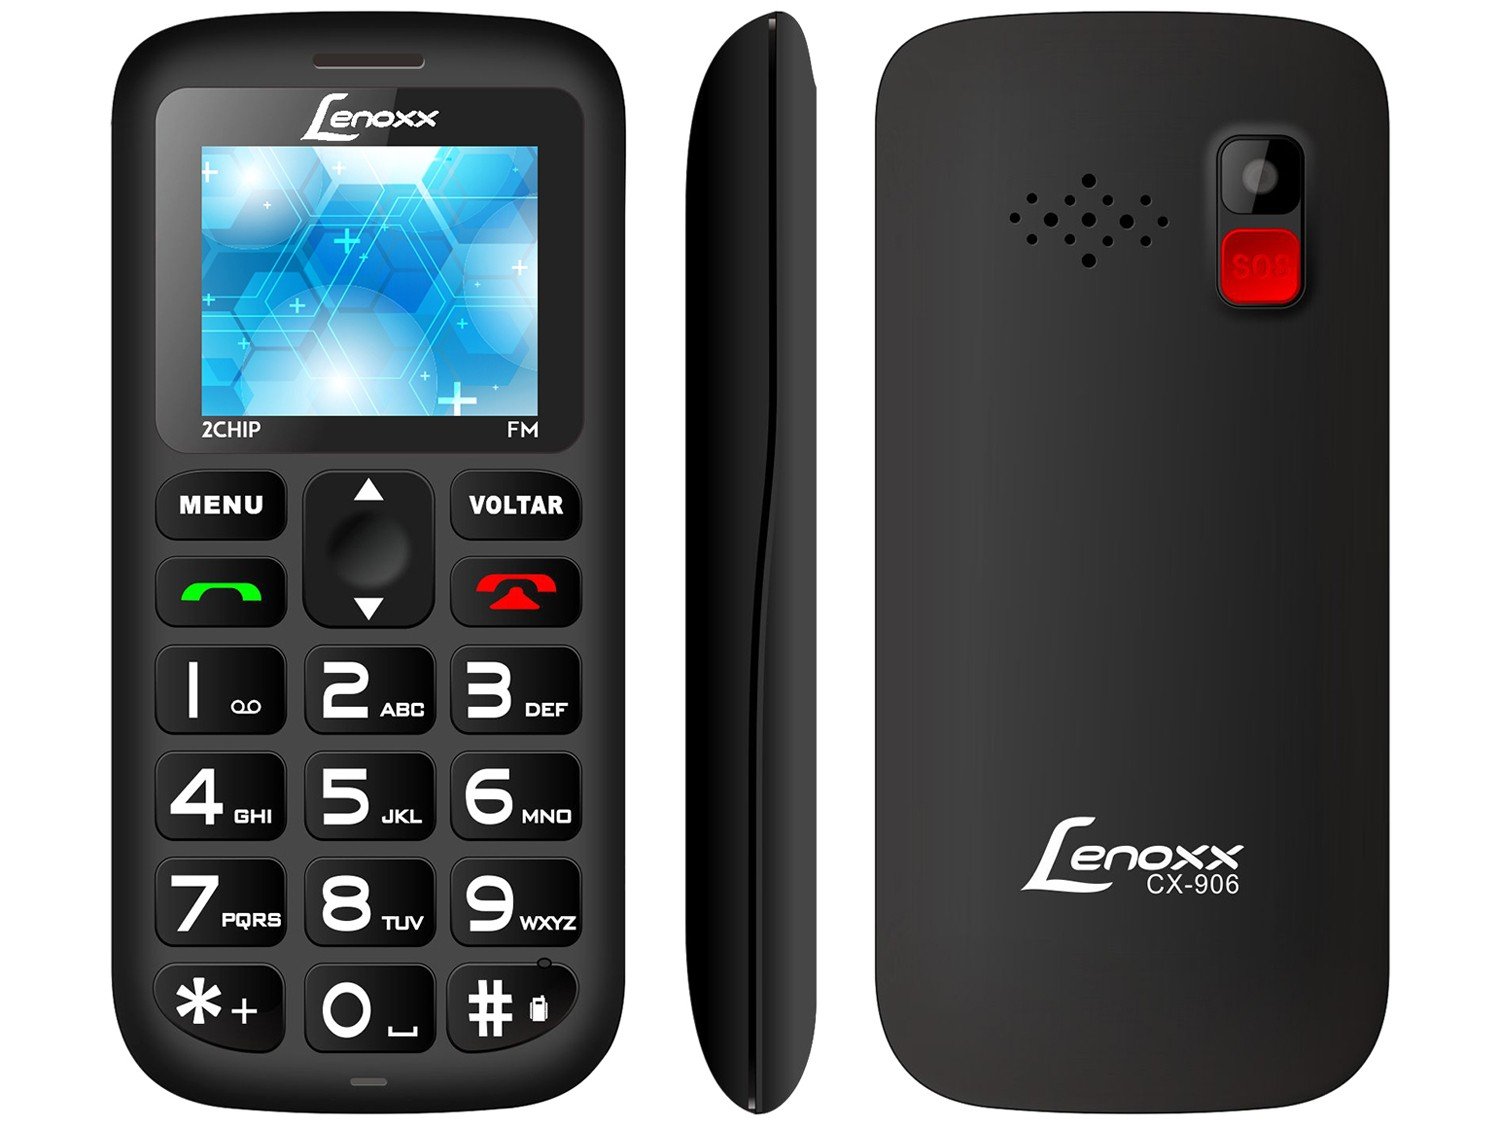 Celular Lenoxx CX 906 Preto com Tela 1.8”, Dual Chip, Câmera VGA, Bluetooth e Rádio FM